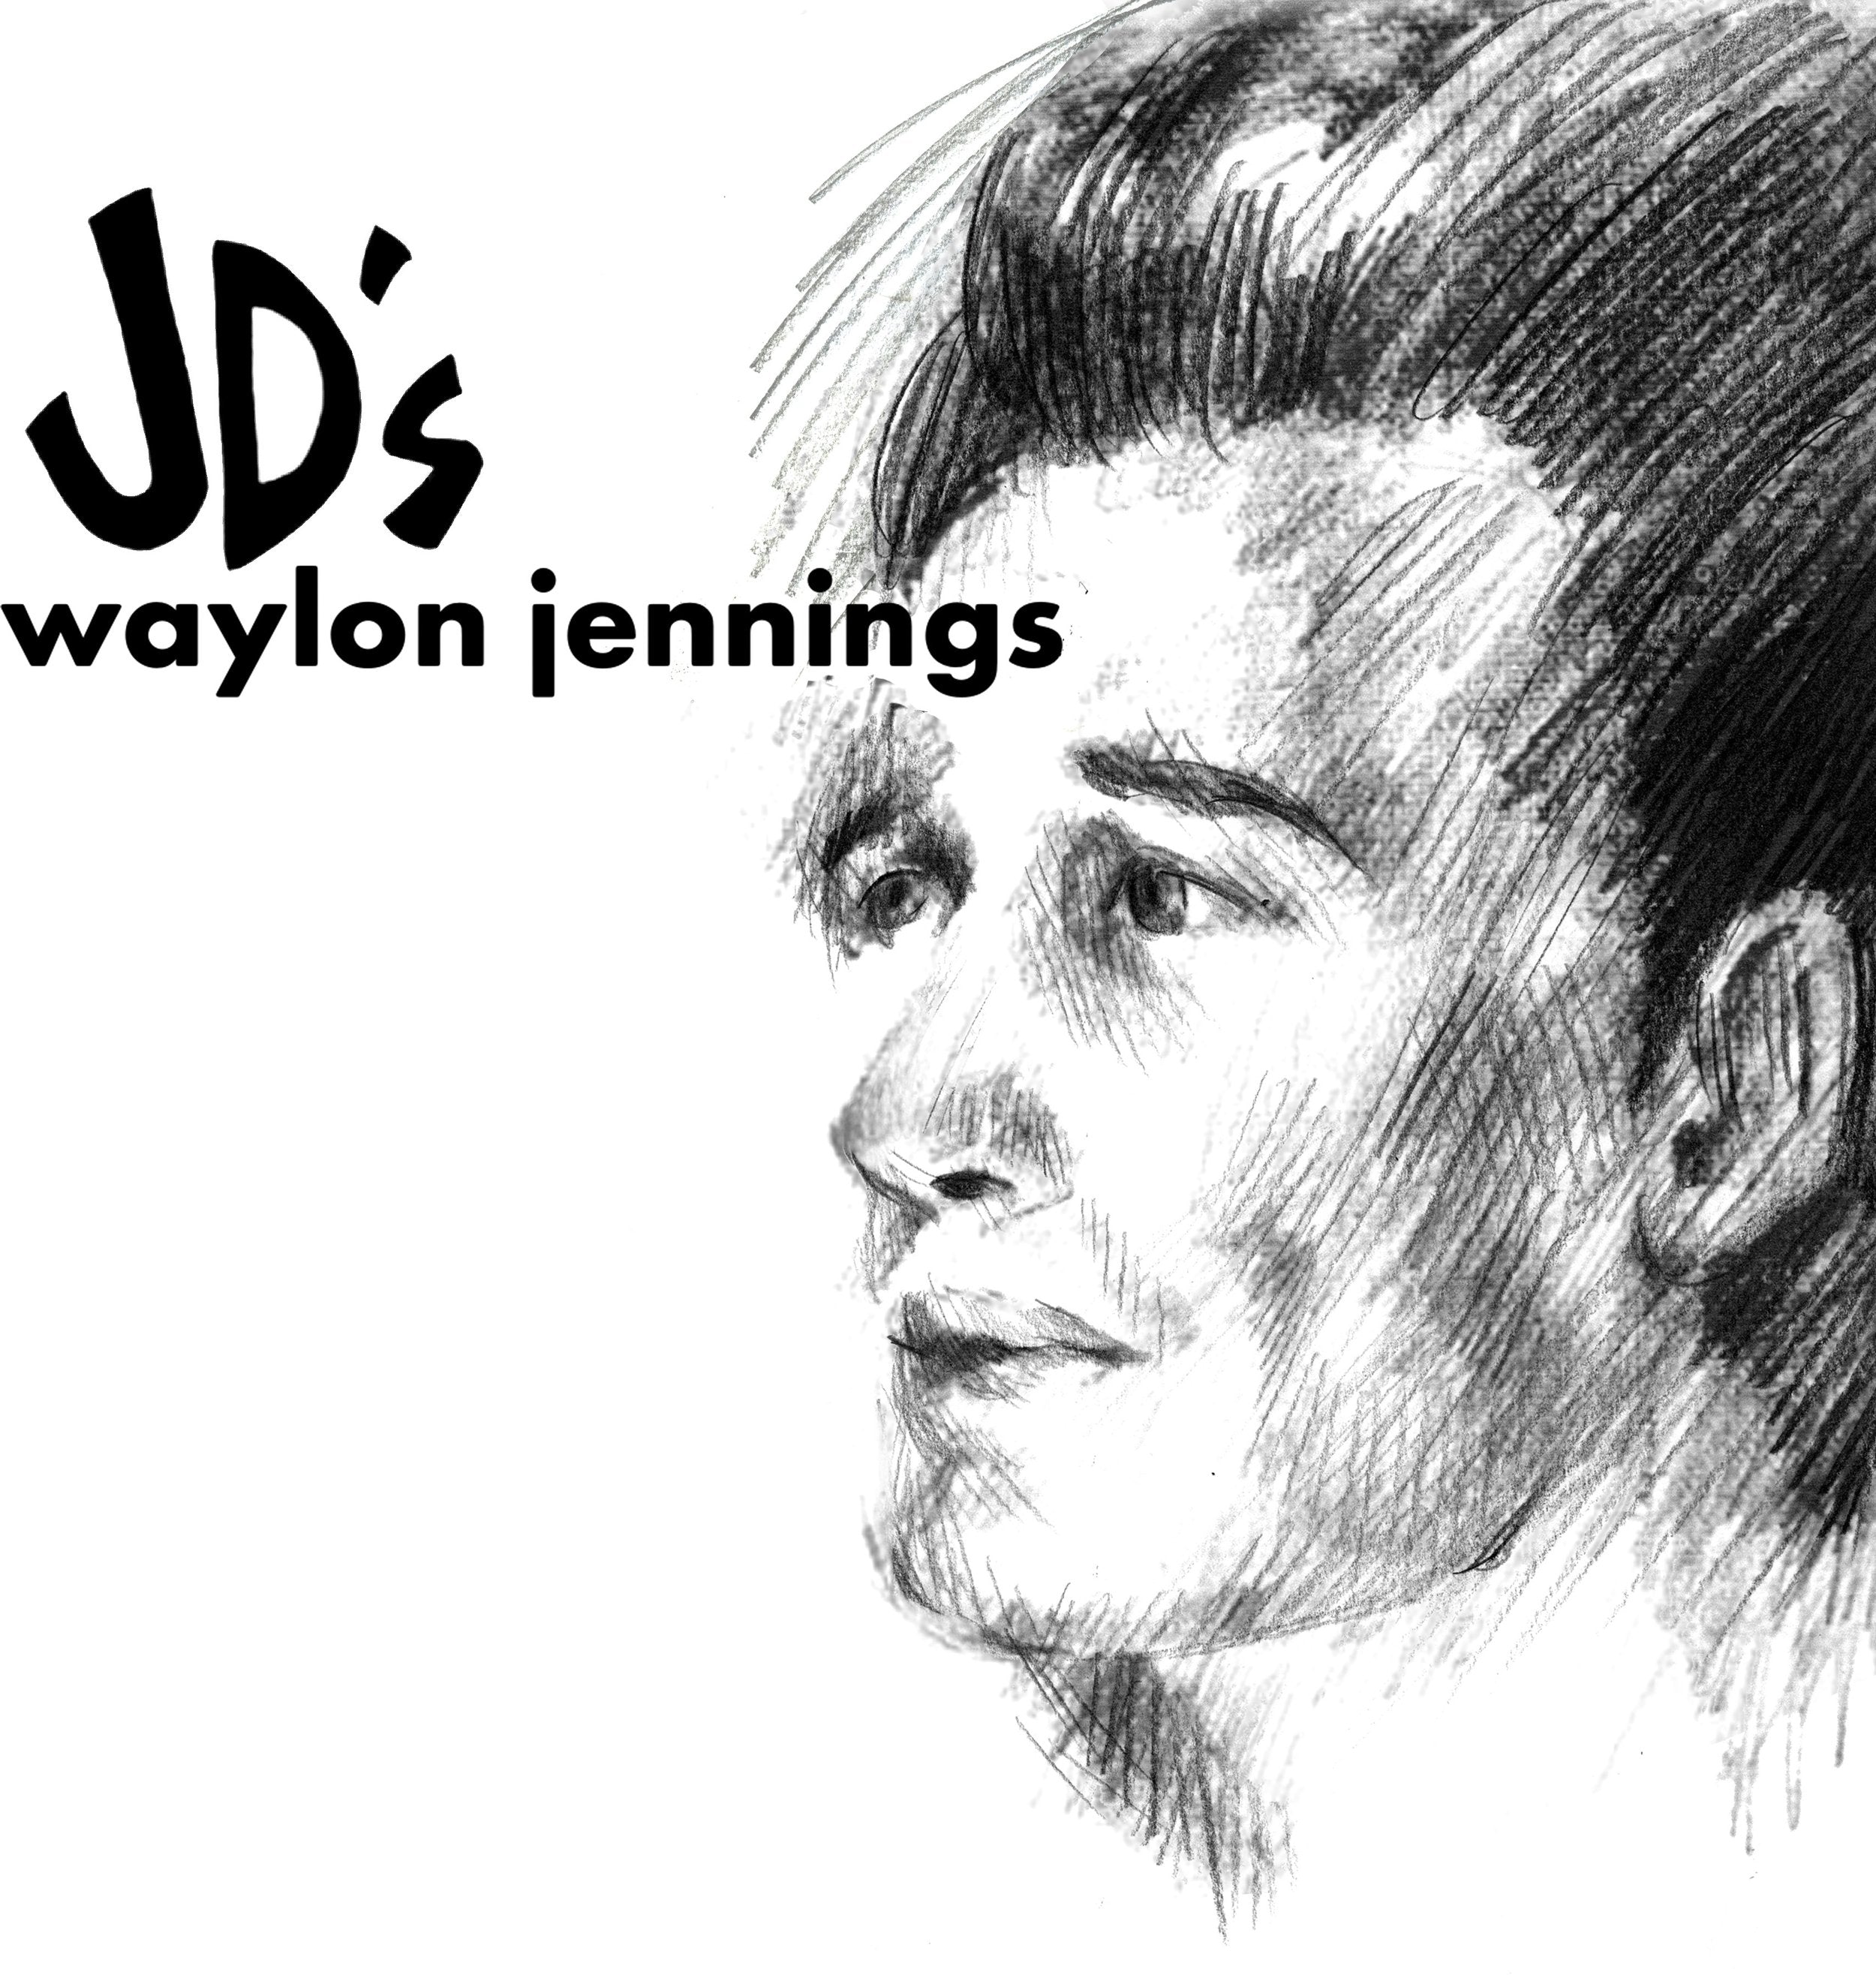 Jennings, Waylon "At JD's"